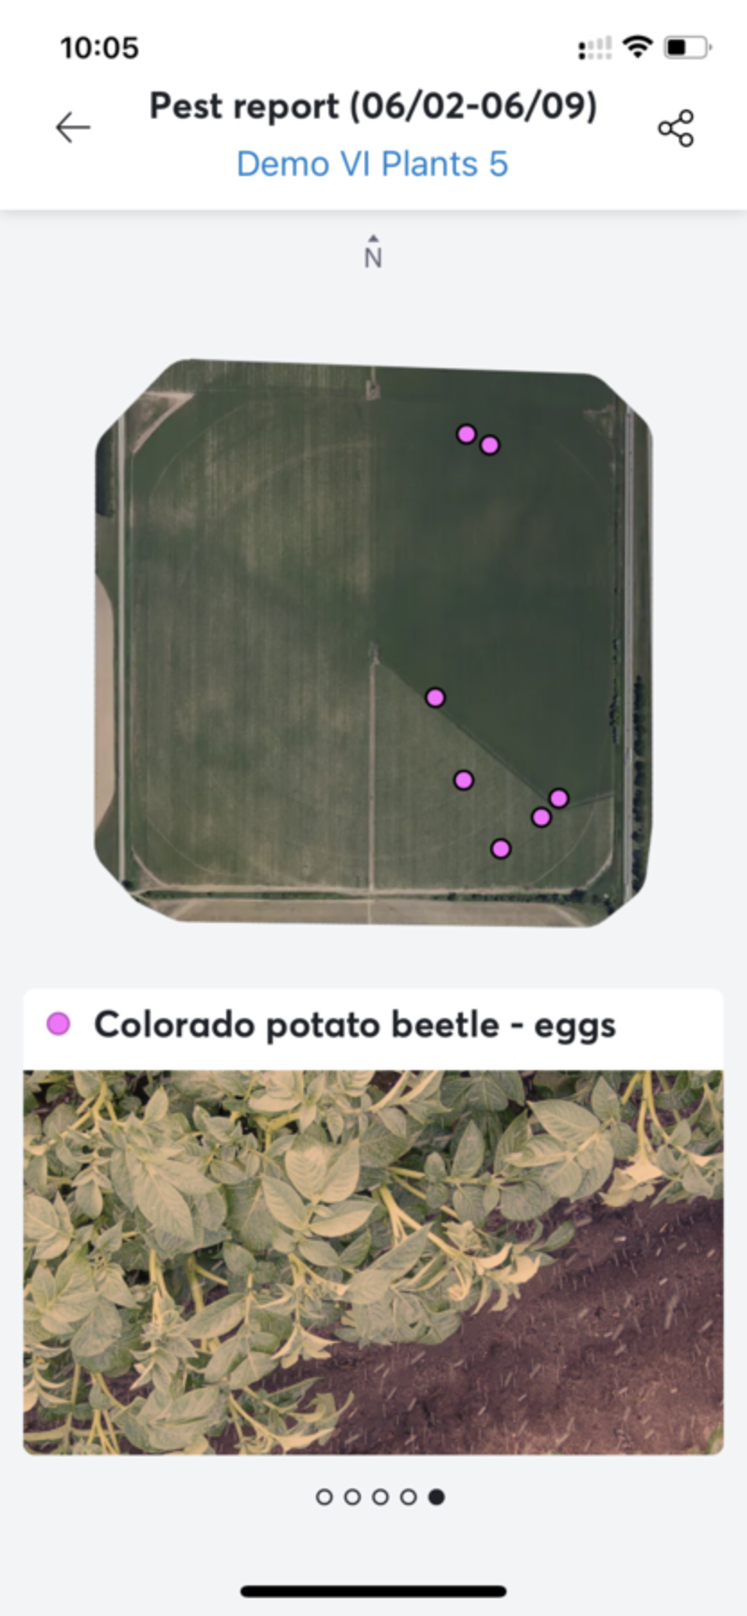 Vue sur l’application smartphone Valley 365 des zones du pivot où ont été détectés des œufs de doryphores sur la face arrière des feuilles visible par la caméra montée sur le pivot. 